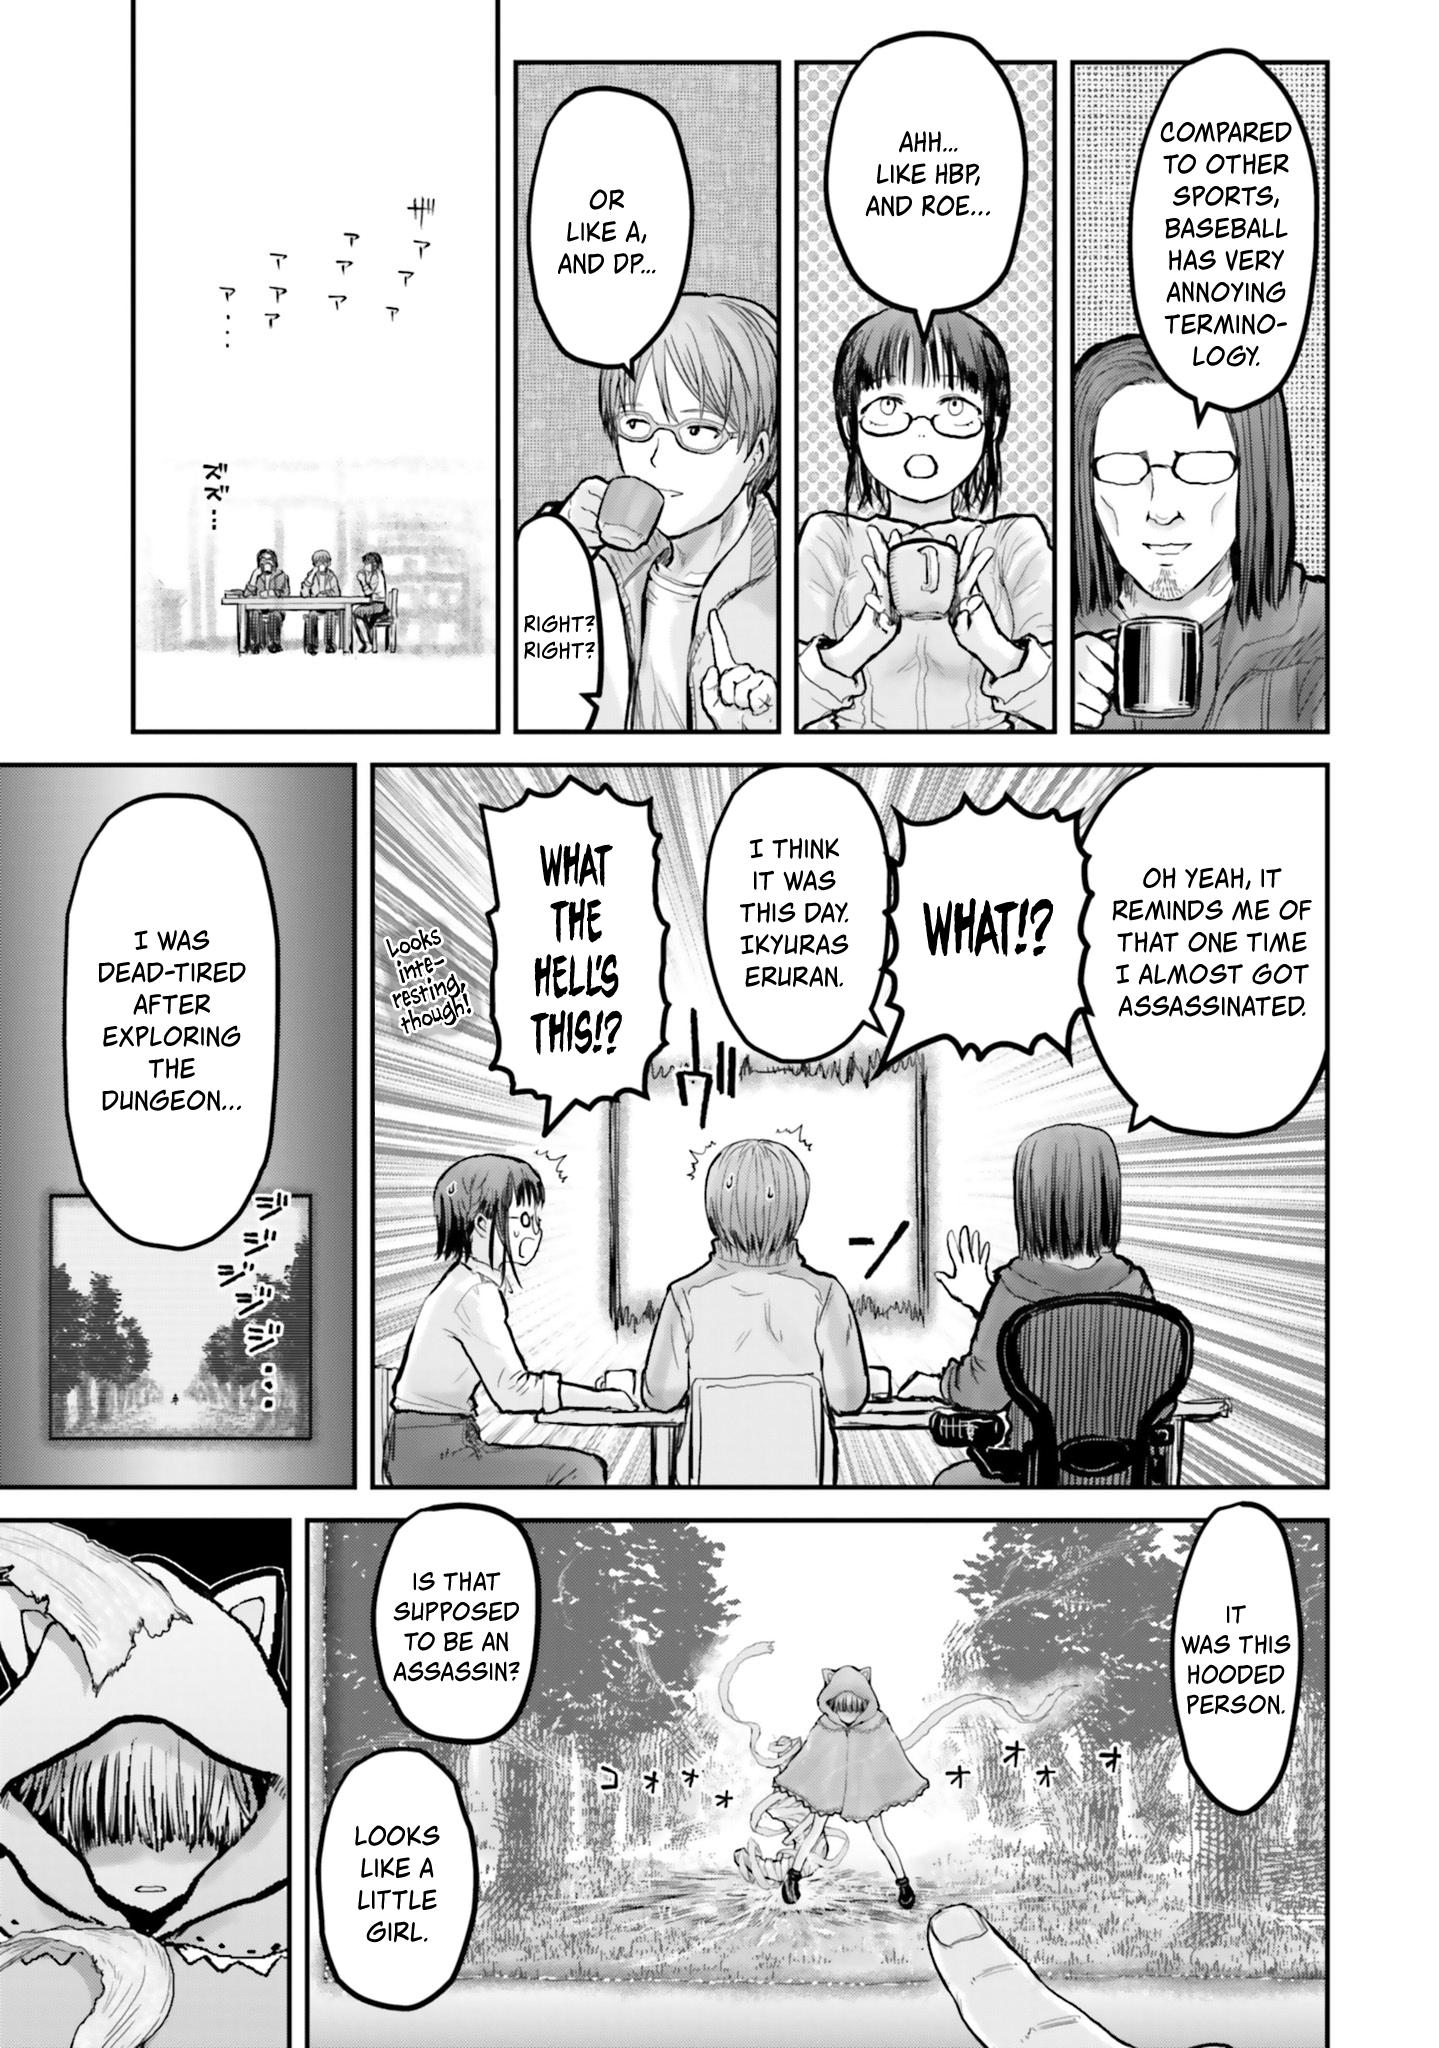 Isekai Ojisan, Chapter 13 - Isekai Ojisan Manga Online